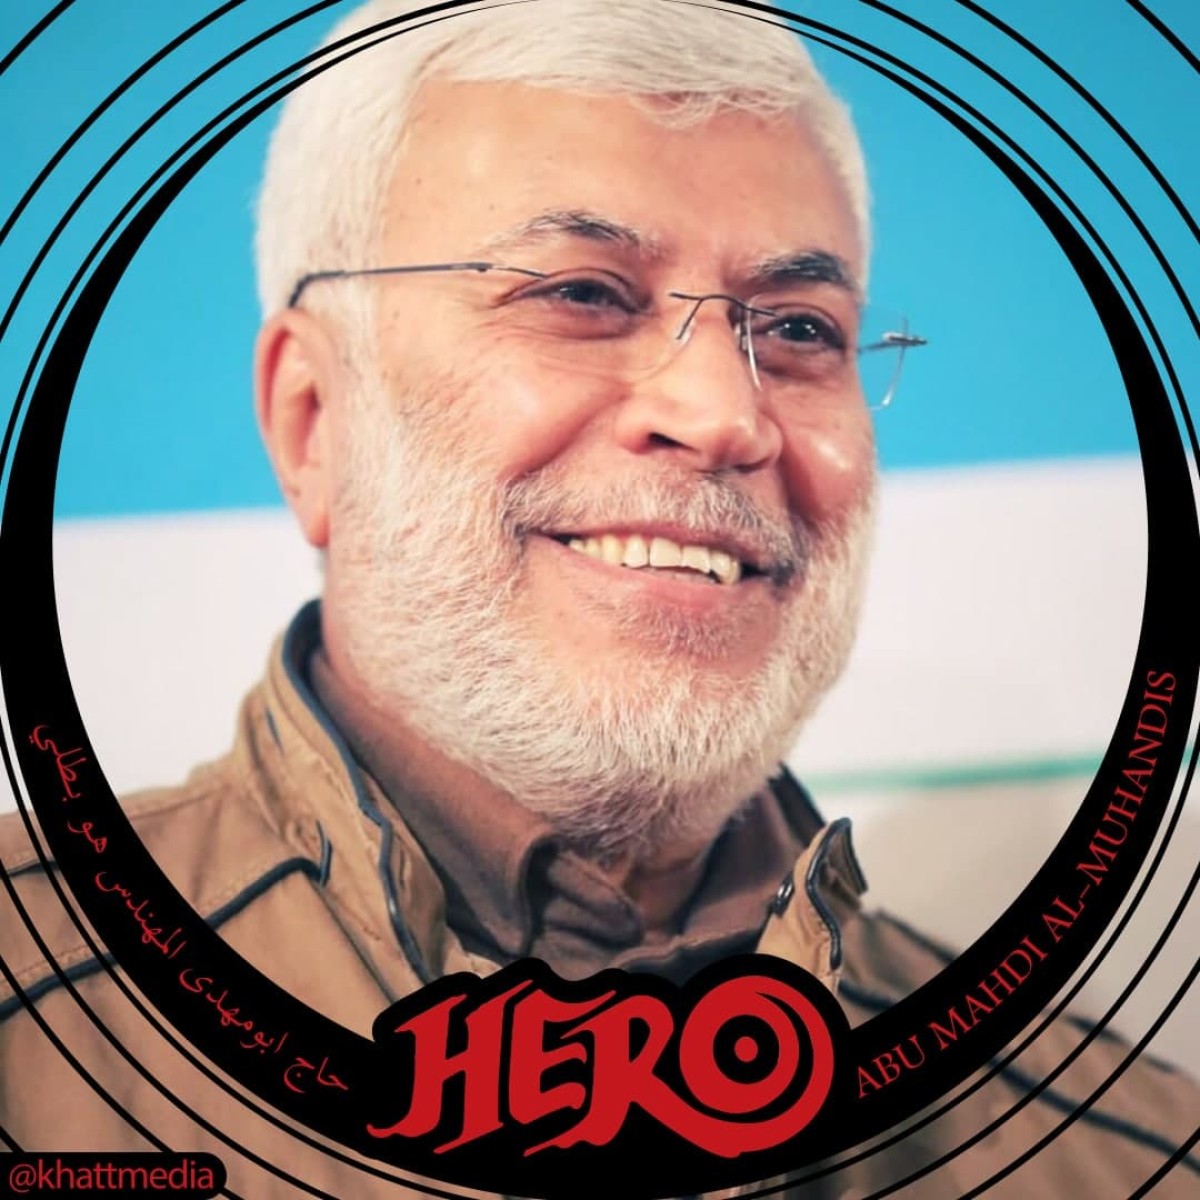 مجموعة بوسترات ” حاج أبو مهدي المهندس هو بطلي “